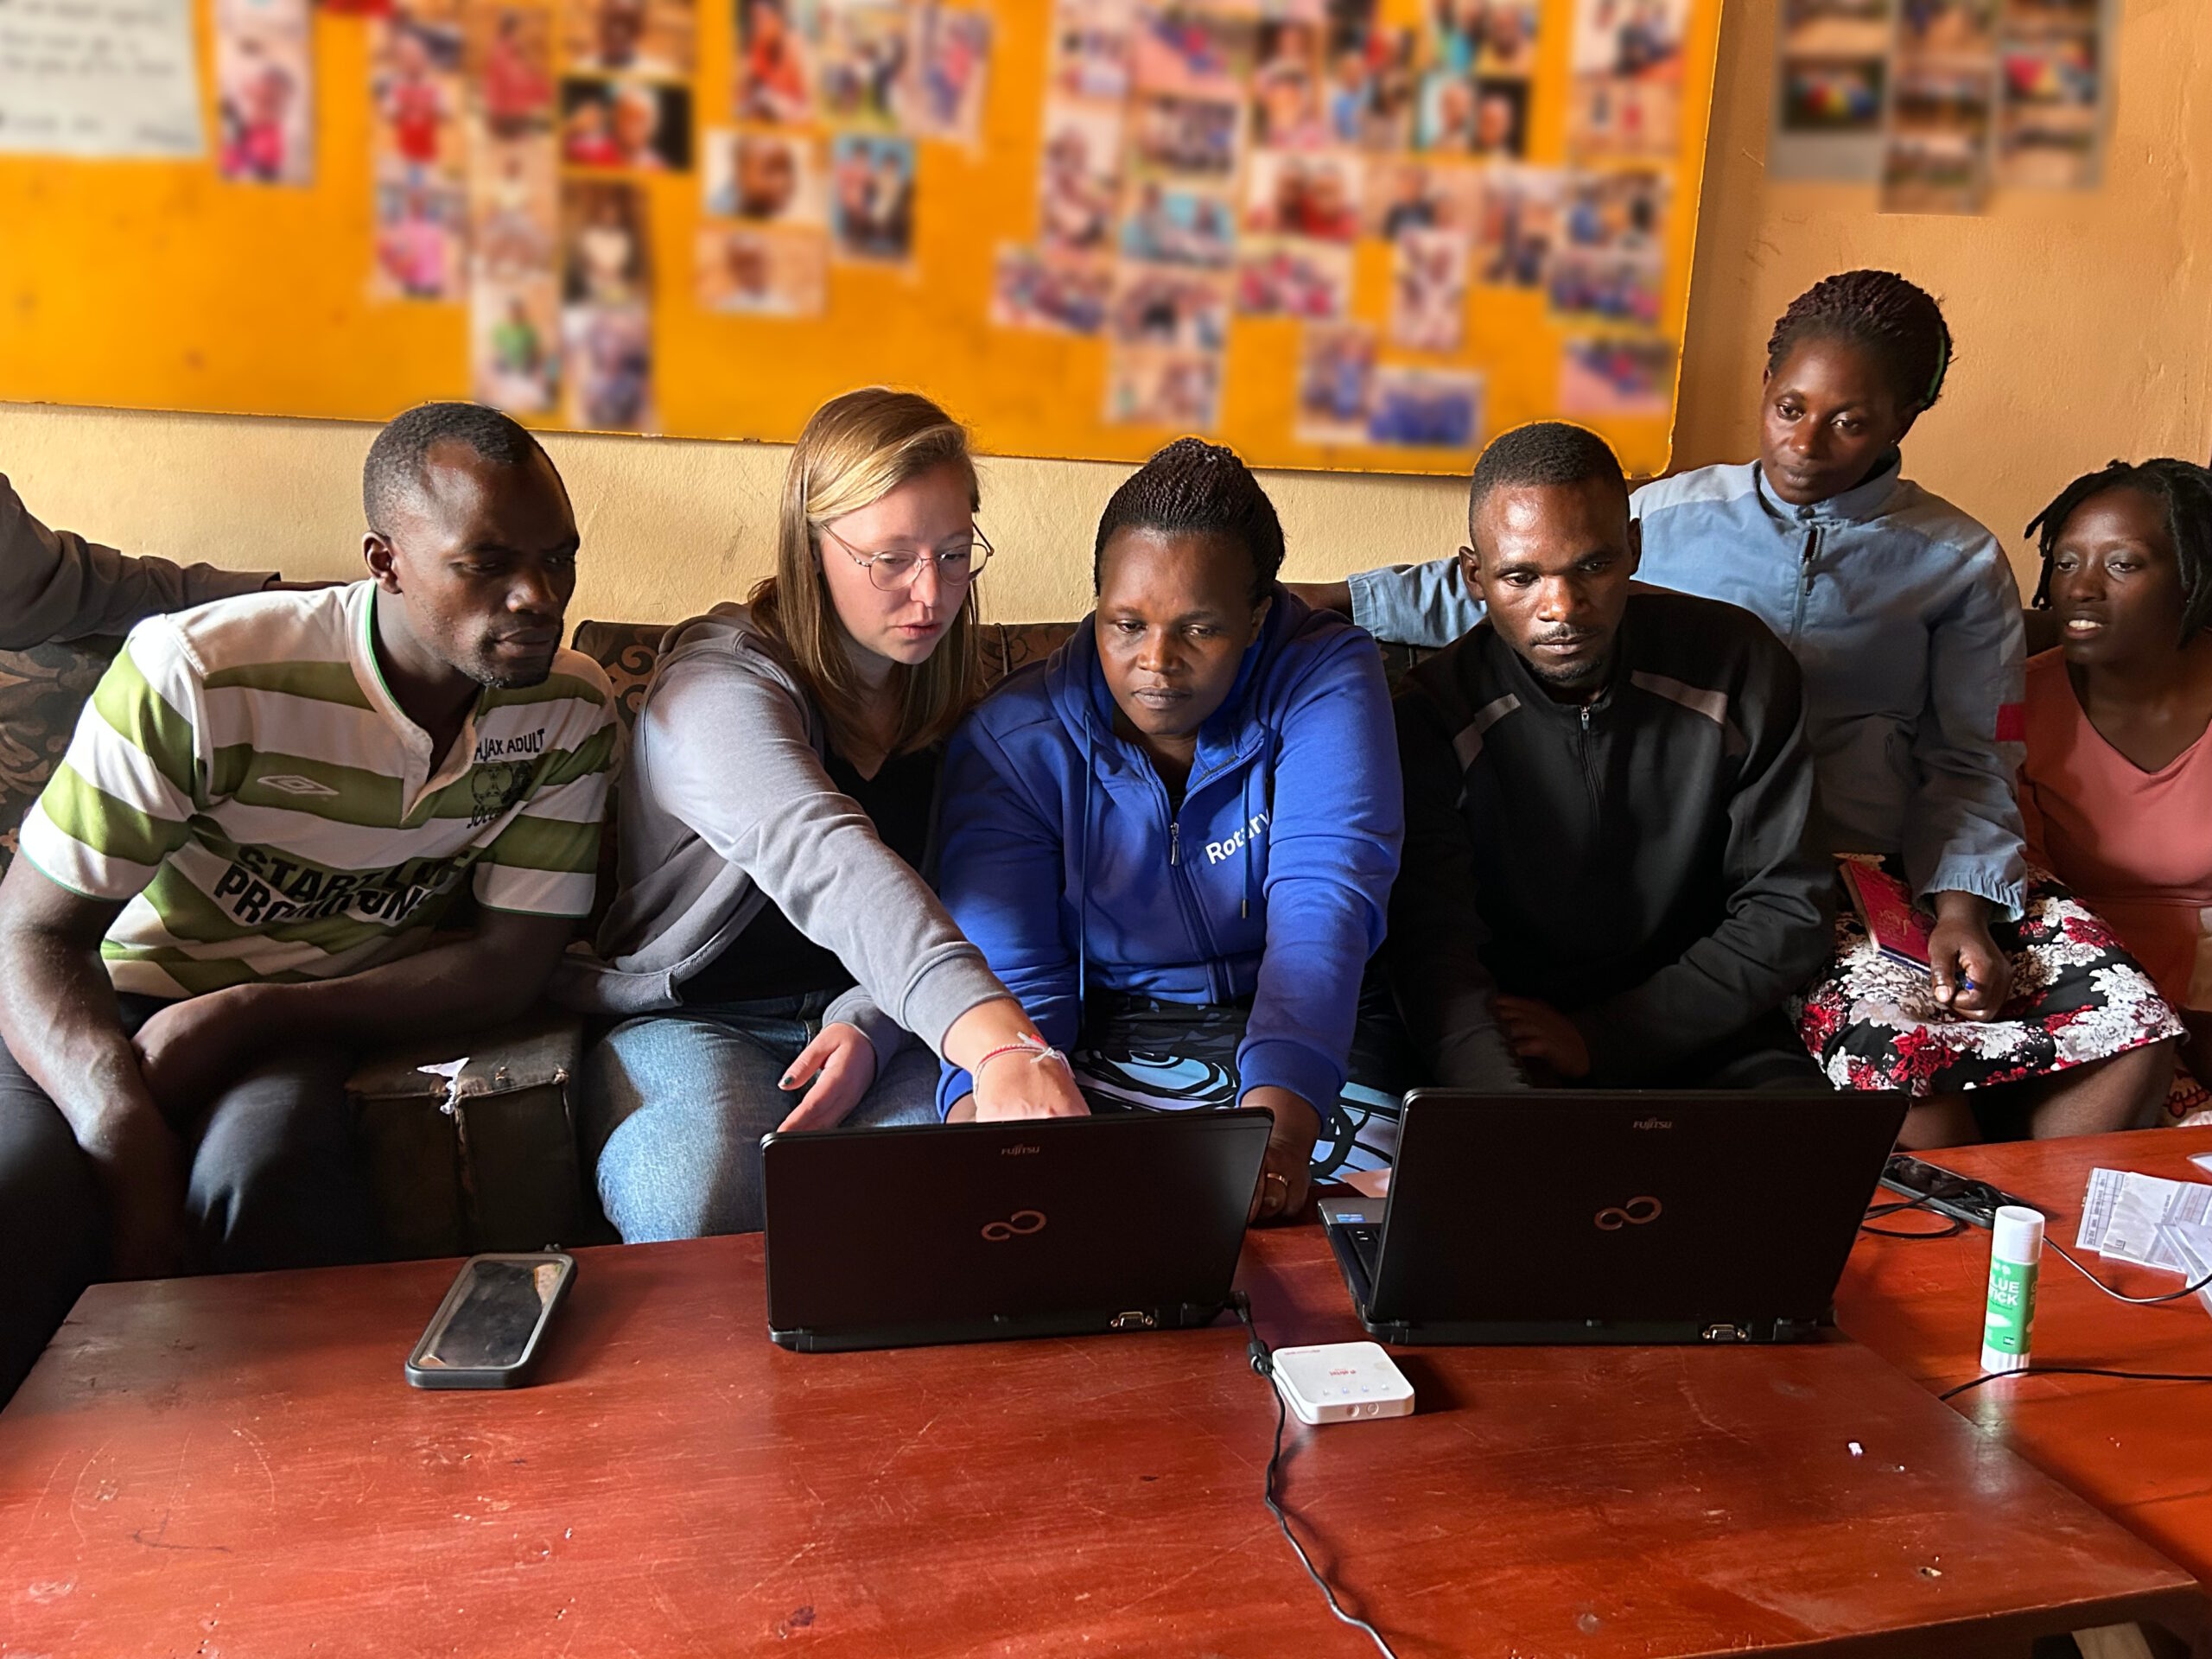 Sechs Personen sitzen vor einem Tisch, auf dem sich zwei aufgeklappte Laptops befinden. Eine hellhäutige Frau zeigt den anderen dunkelhäutigen Personen etwas auf einem der Bildschirme (Foto mit freundlicher Genehmigung des Vereins „KASA for Kids Uganda e. V.“).